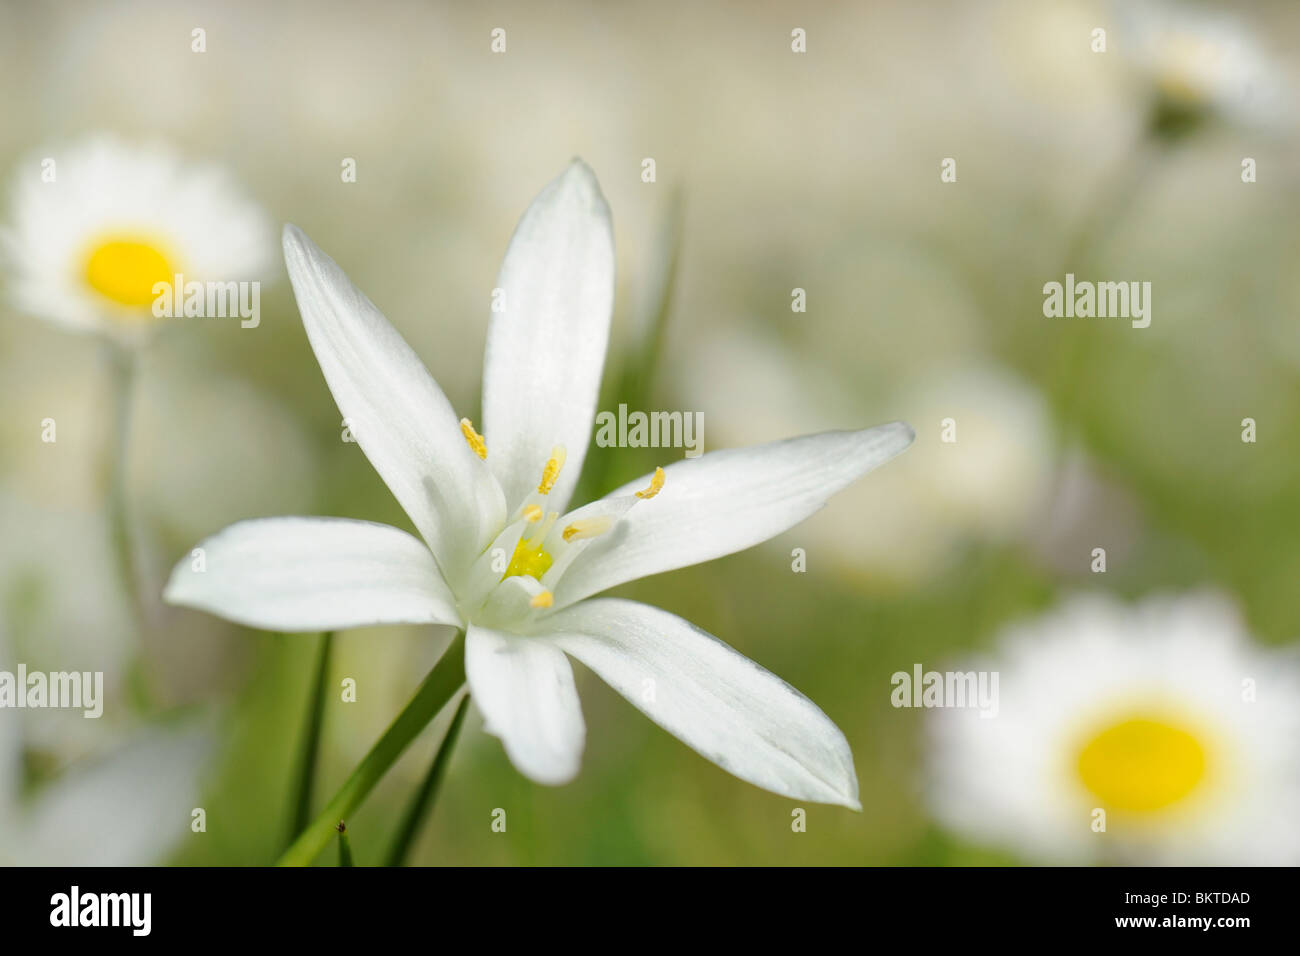 Close-up van een blome van het Gewone Vogelmelk in een veld Madeliefjes; Macro of a flower of the Star of Bethlehem in a field of Daisy's Stock Photo